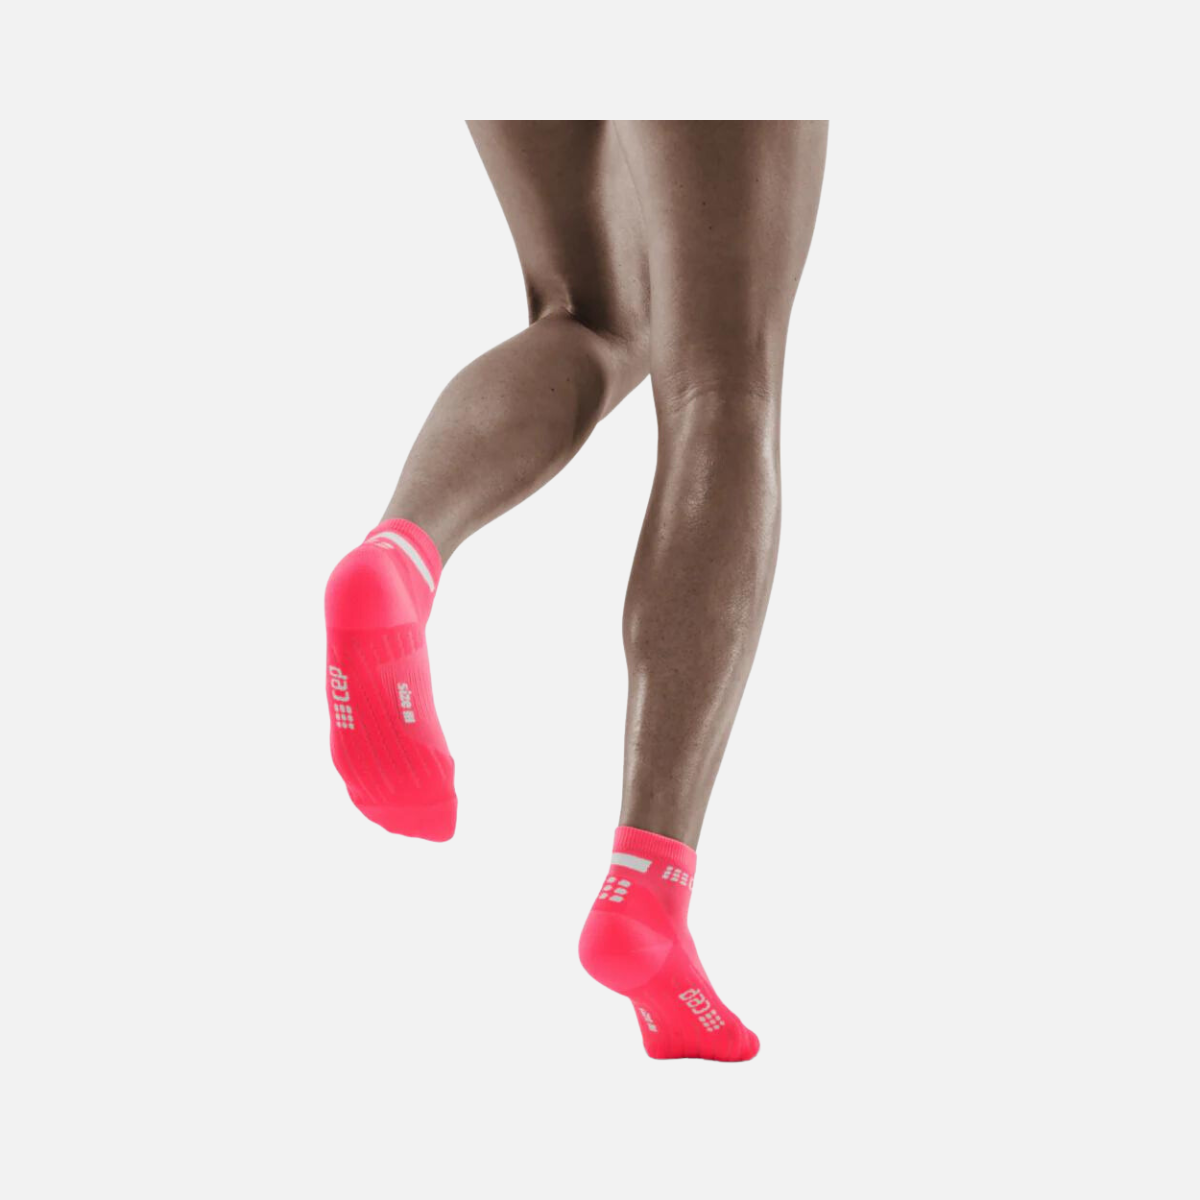 Cep The Run 4.0 Low Cut Women's Socks -Pink